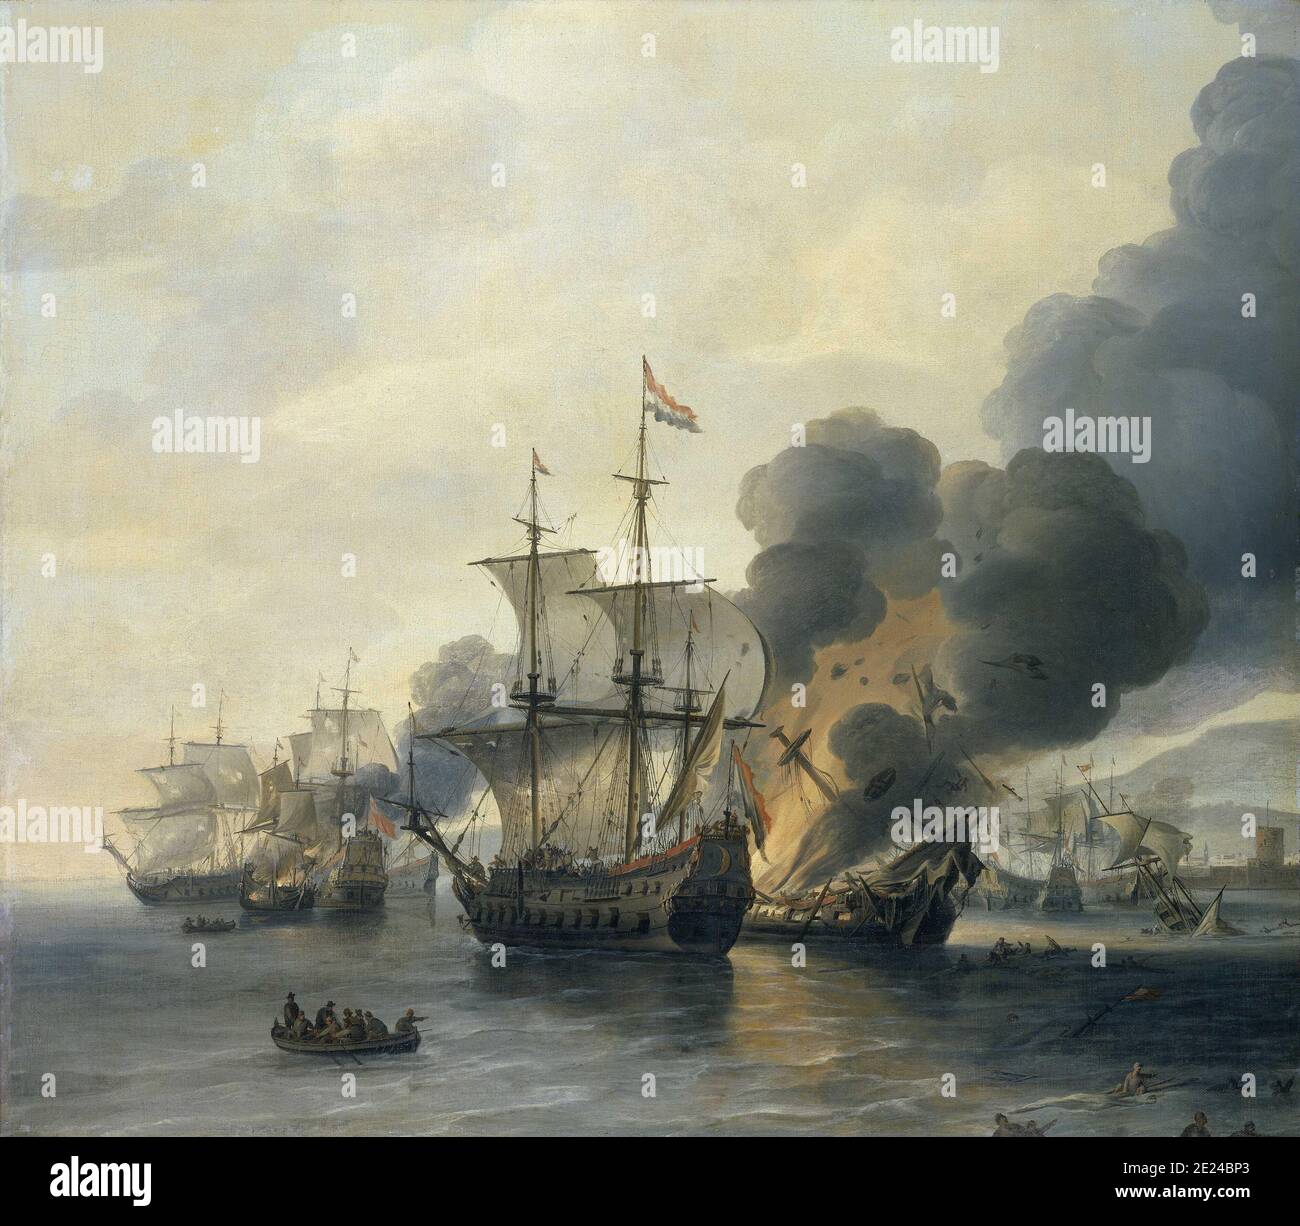 Maritime: 'Die Schlacht von Leghorn, 4. März 1653'. Öl auf Leinwand Gemälde von Willem Hermansz van Diest (c. 1600-1678), Mitte des 17. Jahrhunderts. Die Seeschlacht von Leghorn (die Holländer nennen die Begegnung mit dem italienischen Namen Livorno) fand am 14. März (4. März Old Style) 1653, während des ersten Anglo-Niederländischen Krieges, in der Nähe von Leghorn (Livorno), Italien. Es war ein Sieg einer holländischen Flotte unter Commodore Johan van Galen über eine englische Staffel unter Captain Henry Appleton. Danach kam eine englische Flotte unter Kapitän Richard Badiley, die Appleton zu erreichen versucht hatte, aber war unternumeriert und floh. Stockfoto